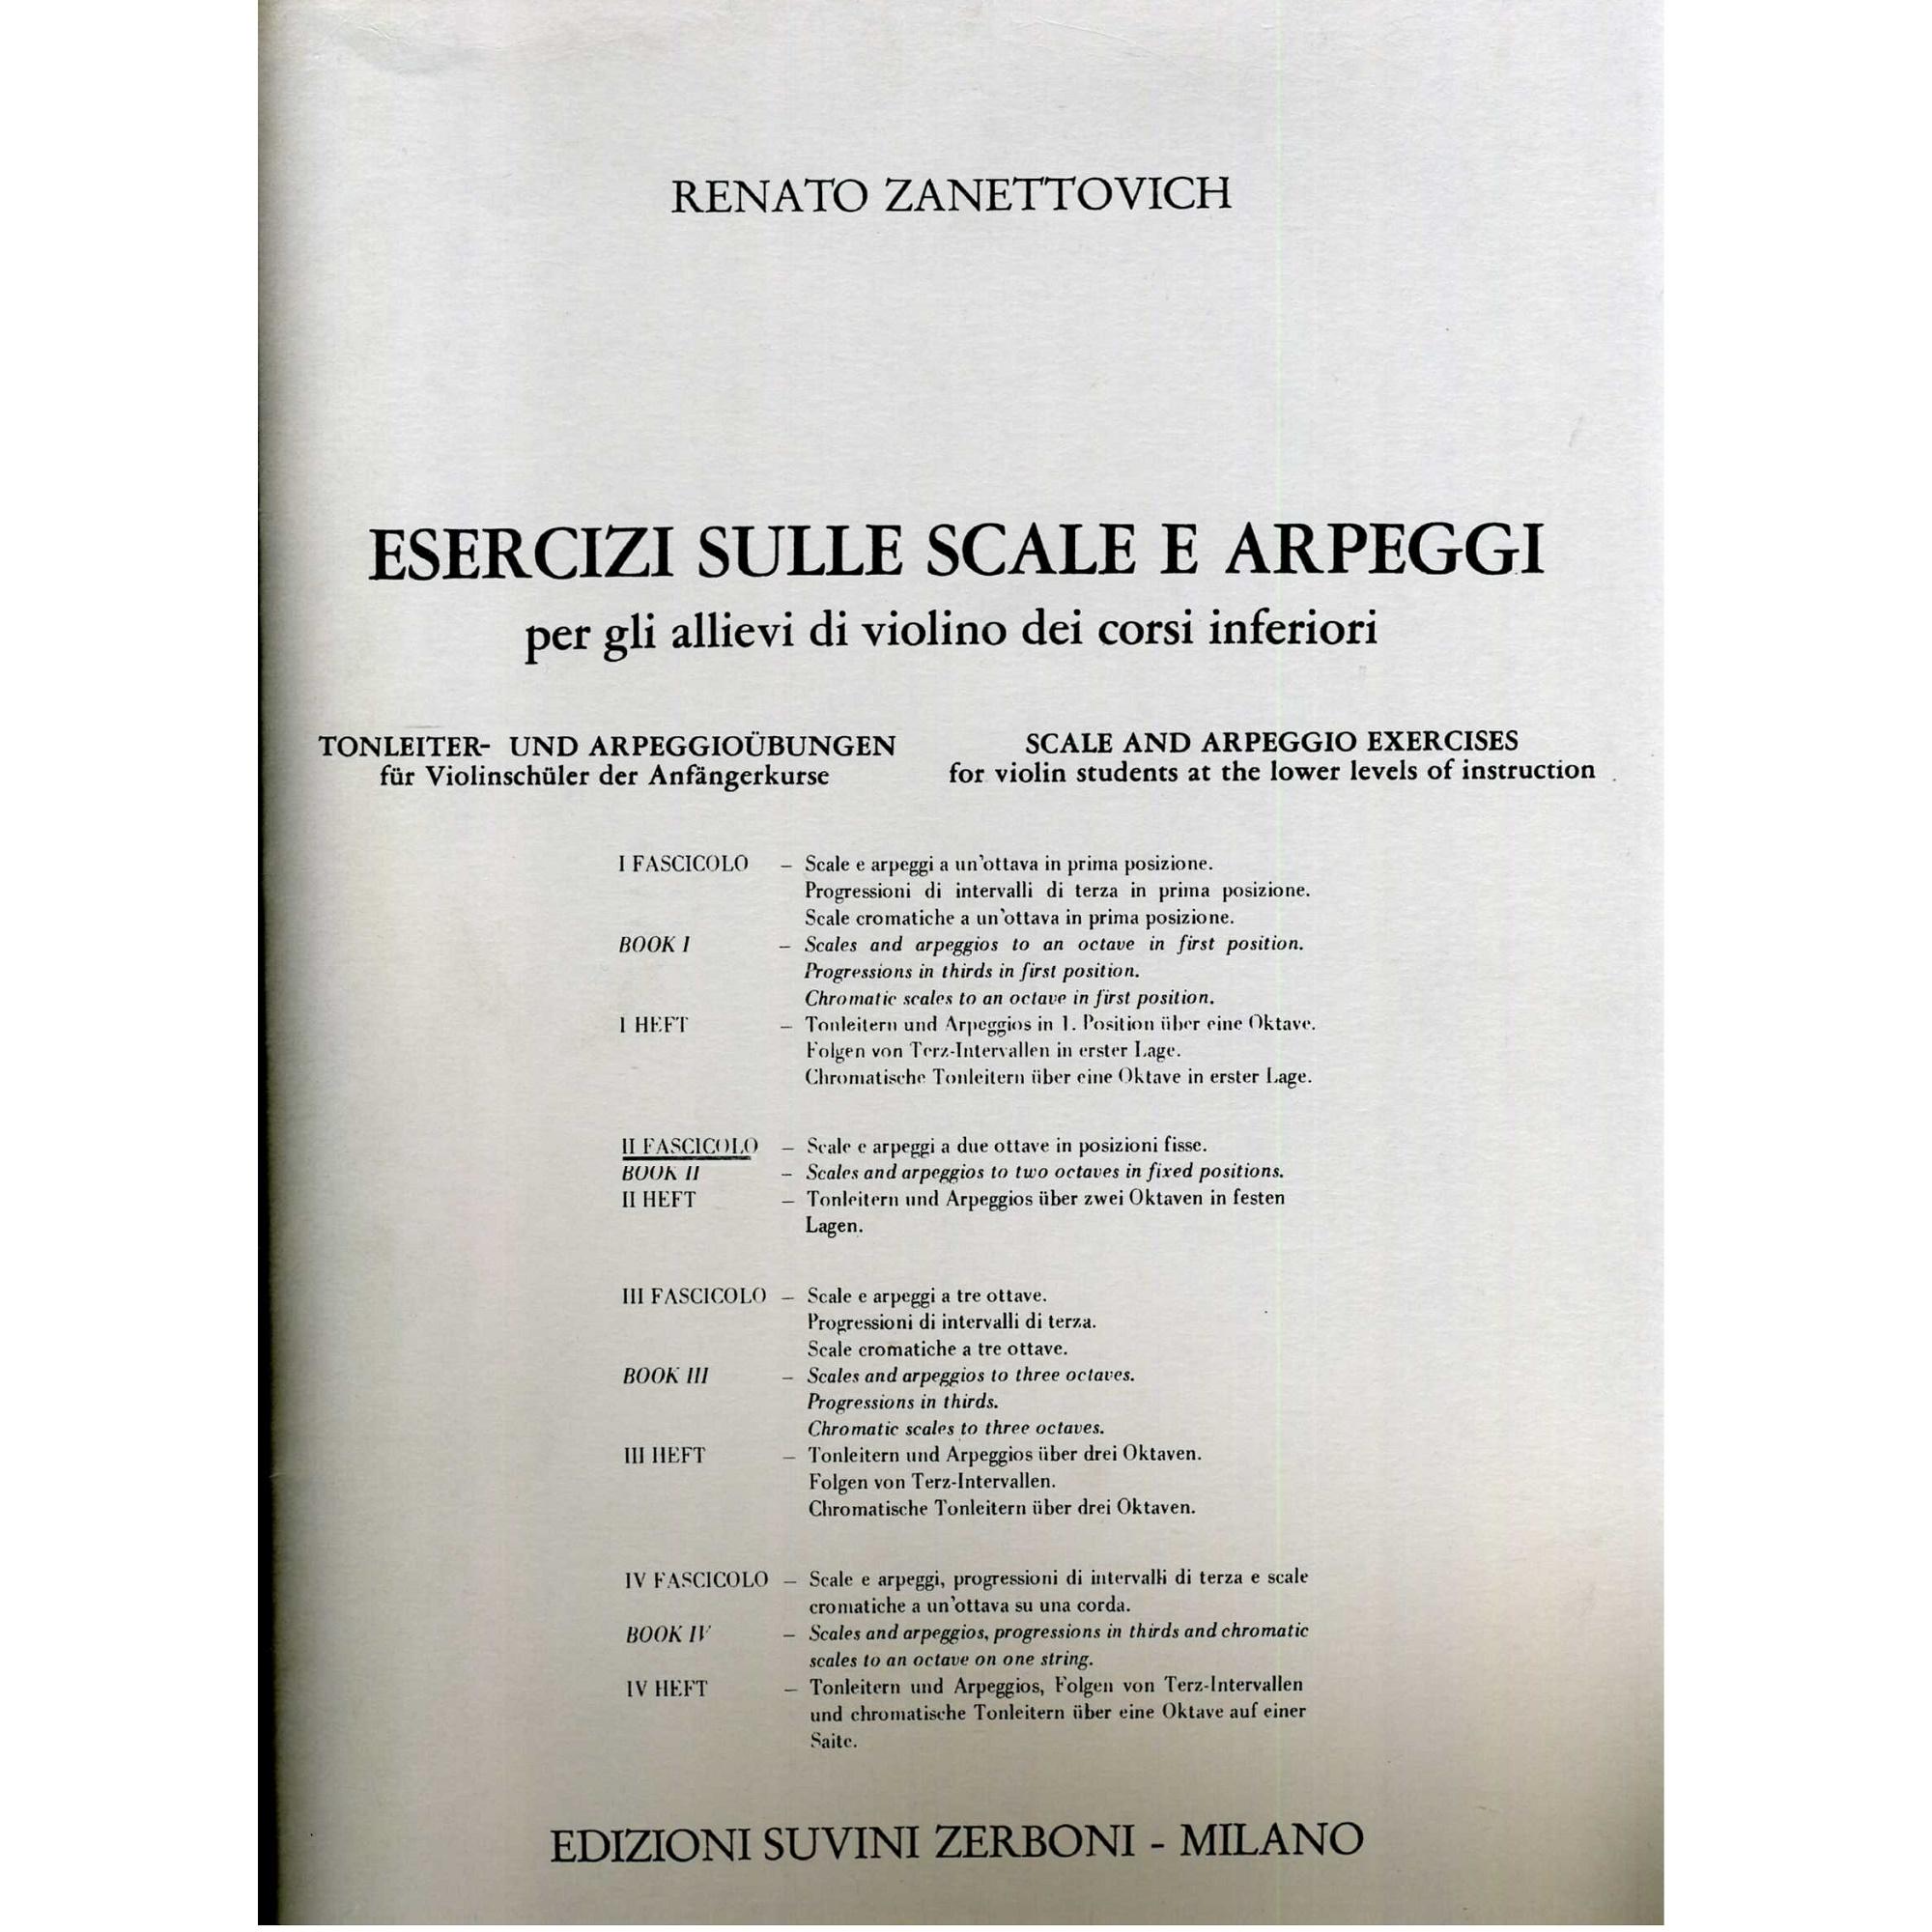 Zanettovich Esercizi sulle scale e arpeggi per gli allievi di violino dei corsi inferiori II Fascicolo - Edizioni Suvini Zerboni Milano